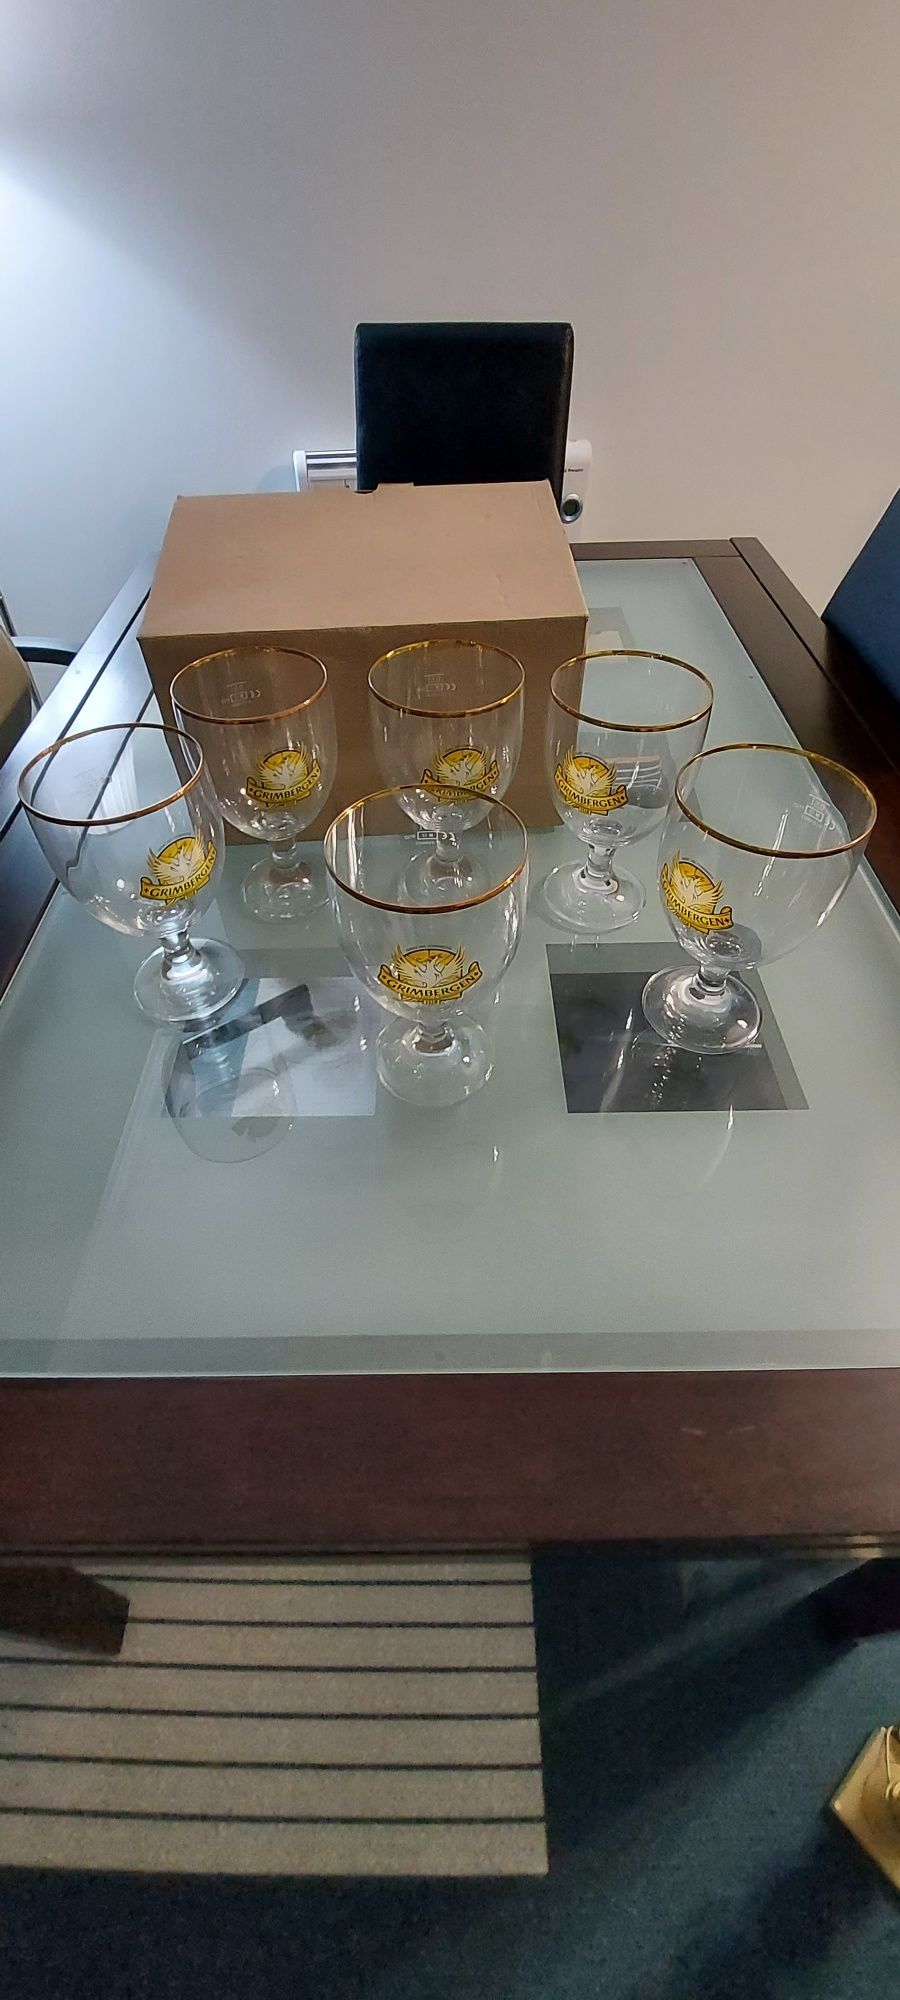 Conjunto de copos Grimbergen